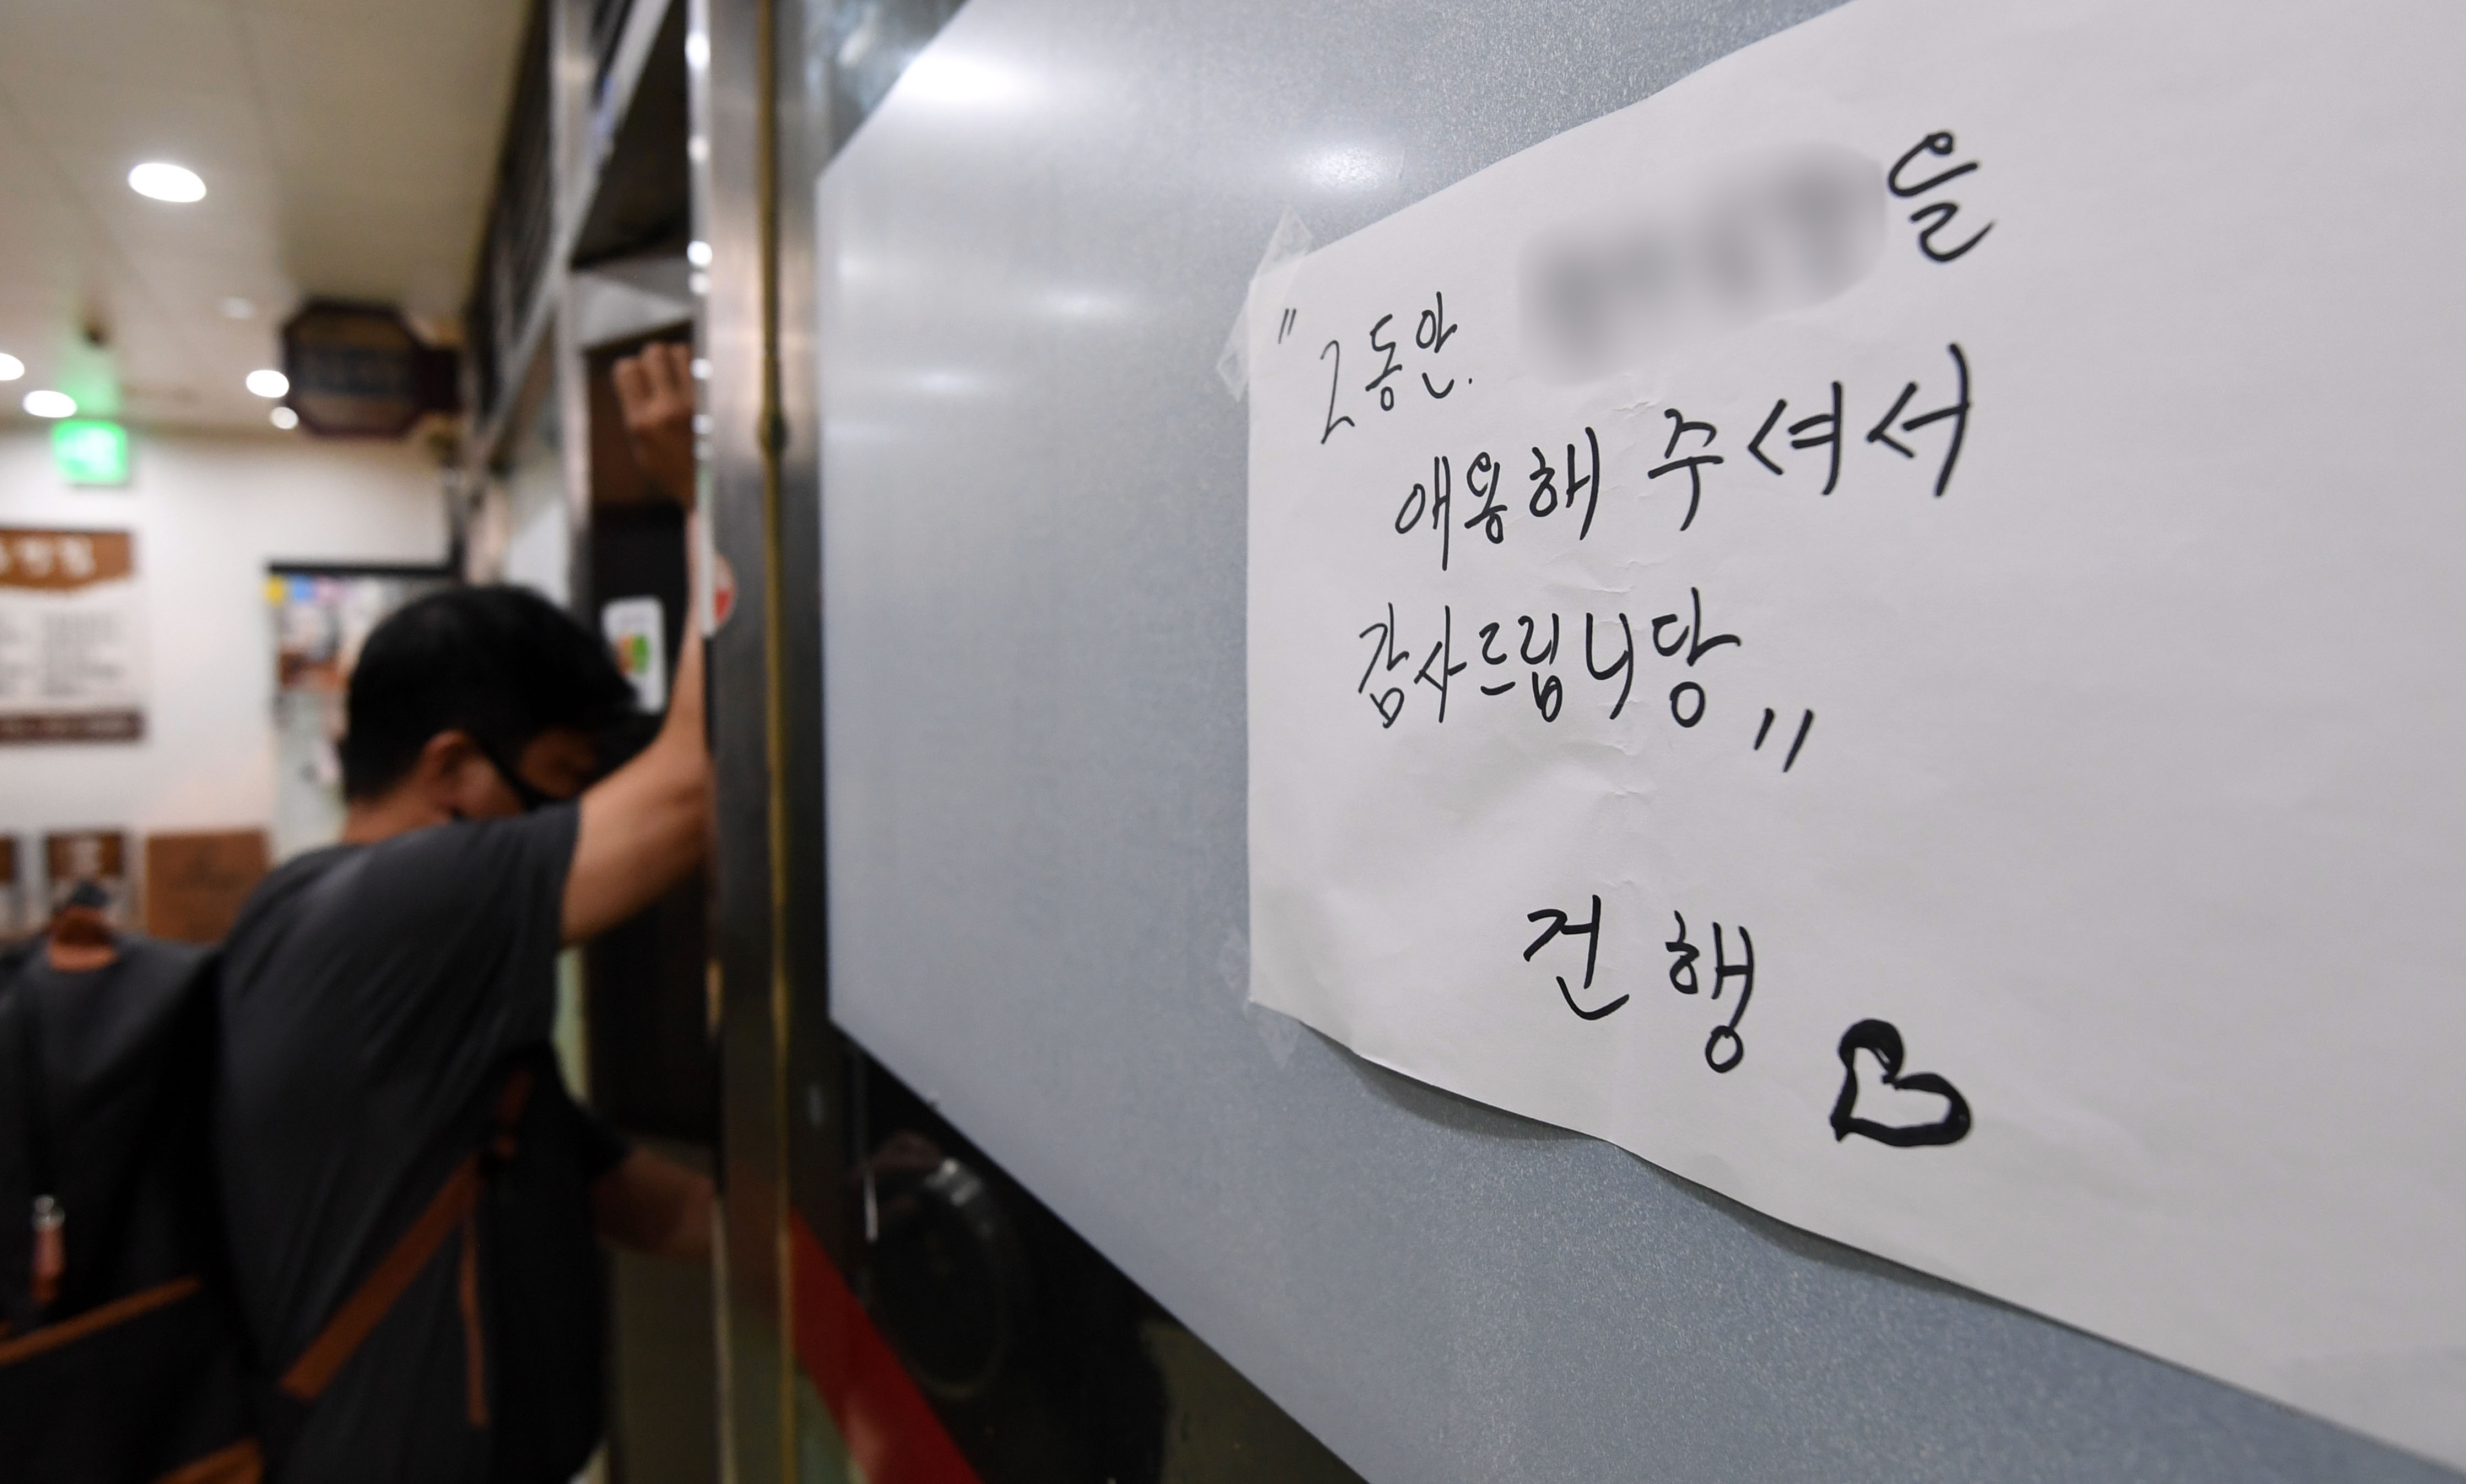 사회적 거리두기 2단계가 시행 중인 16일 점심시간 서울 광화문 인근 식당상가의 한 식당에 폐업안내문이 붙어있다.  2020. 9. 16 박윤슬 기자 seul@seoul.co.kr